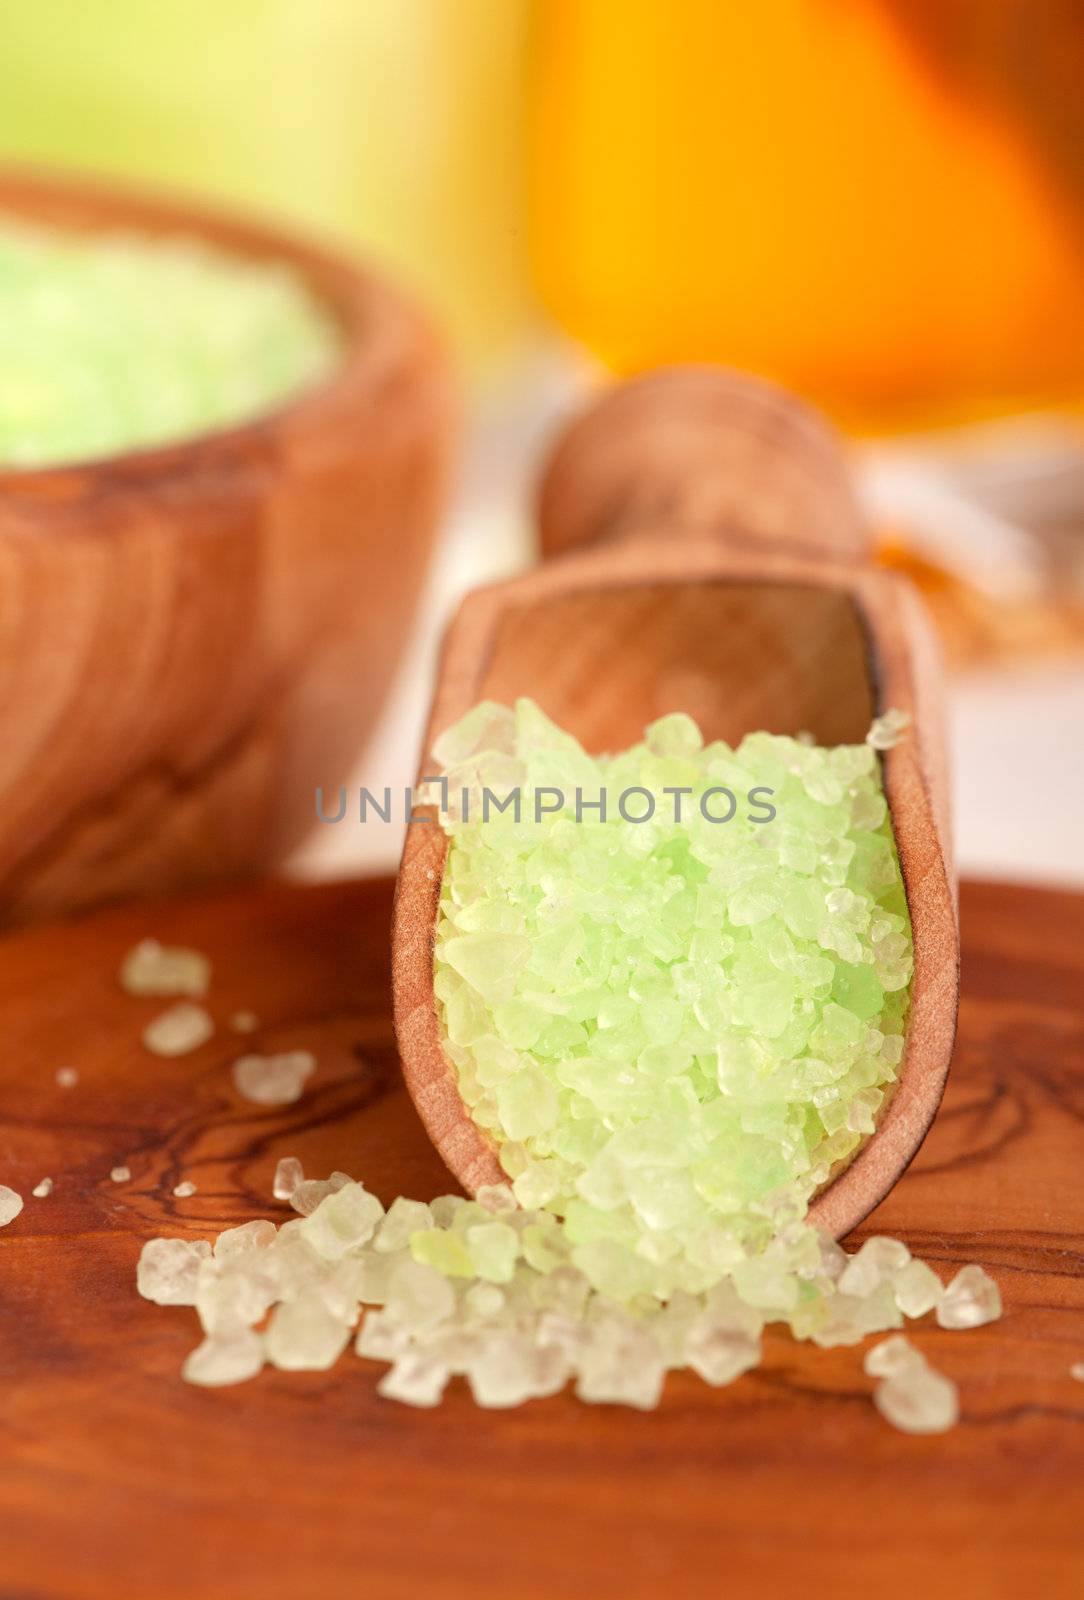 green herbal salt in the wooden spoon. by motorolka